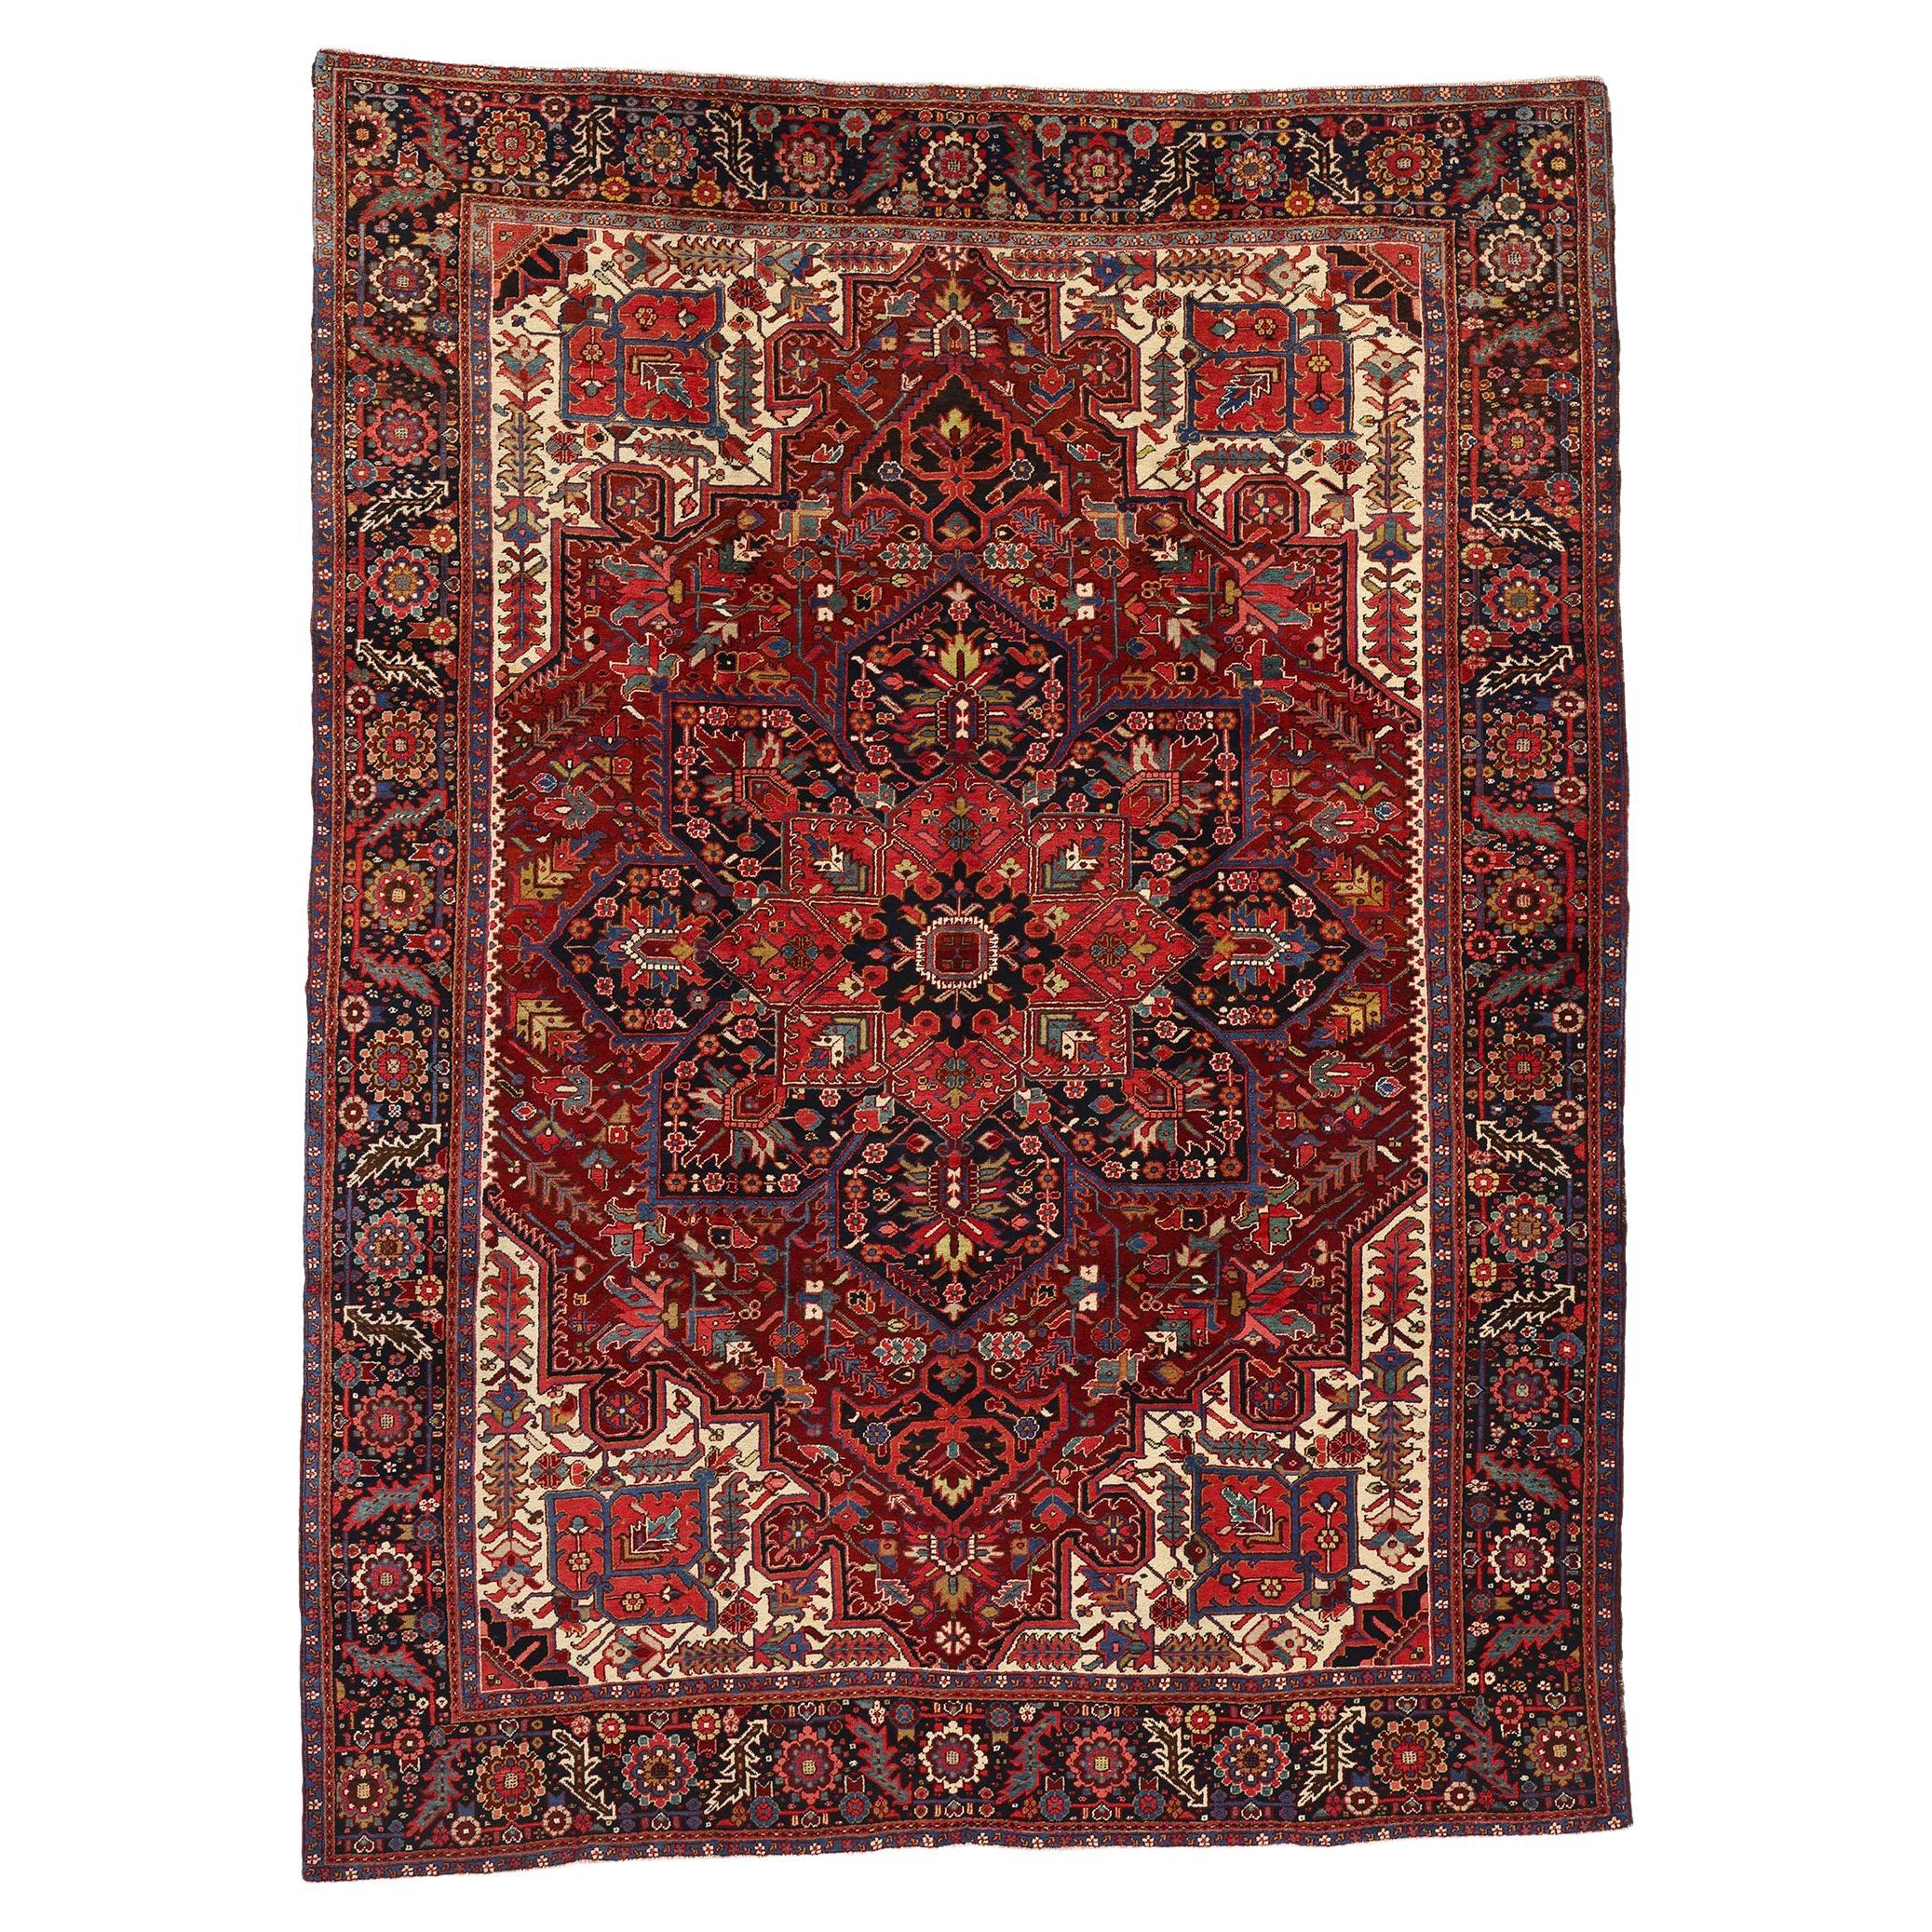 1960s Vintage Red Persian Wool Rug Heriz Carpet